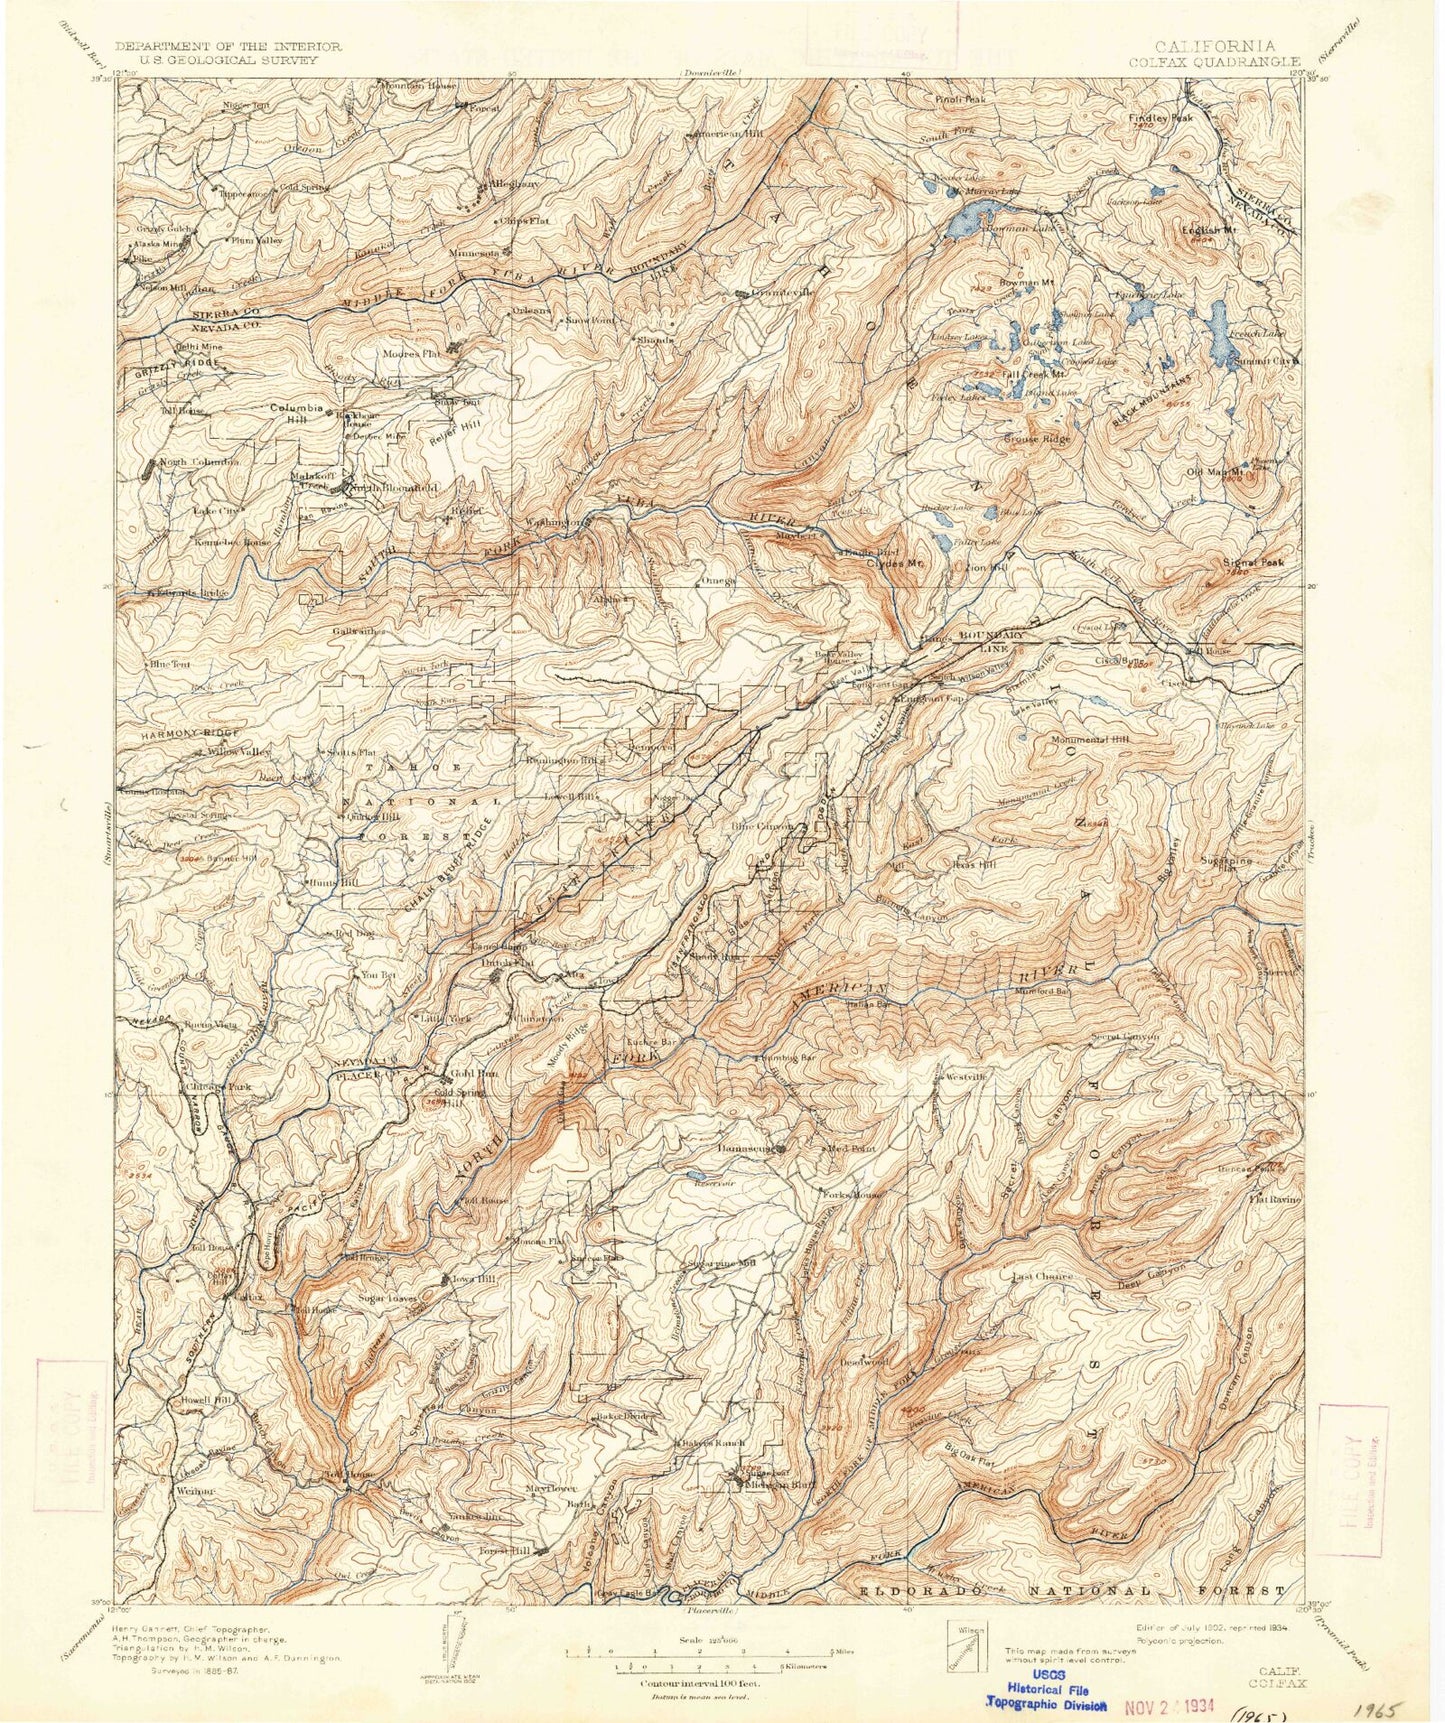 Historic 1902 Colfax California 30'x30' Topo Map Image